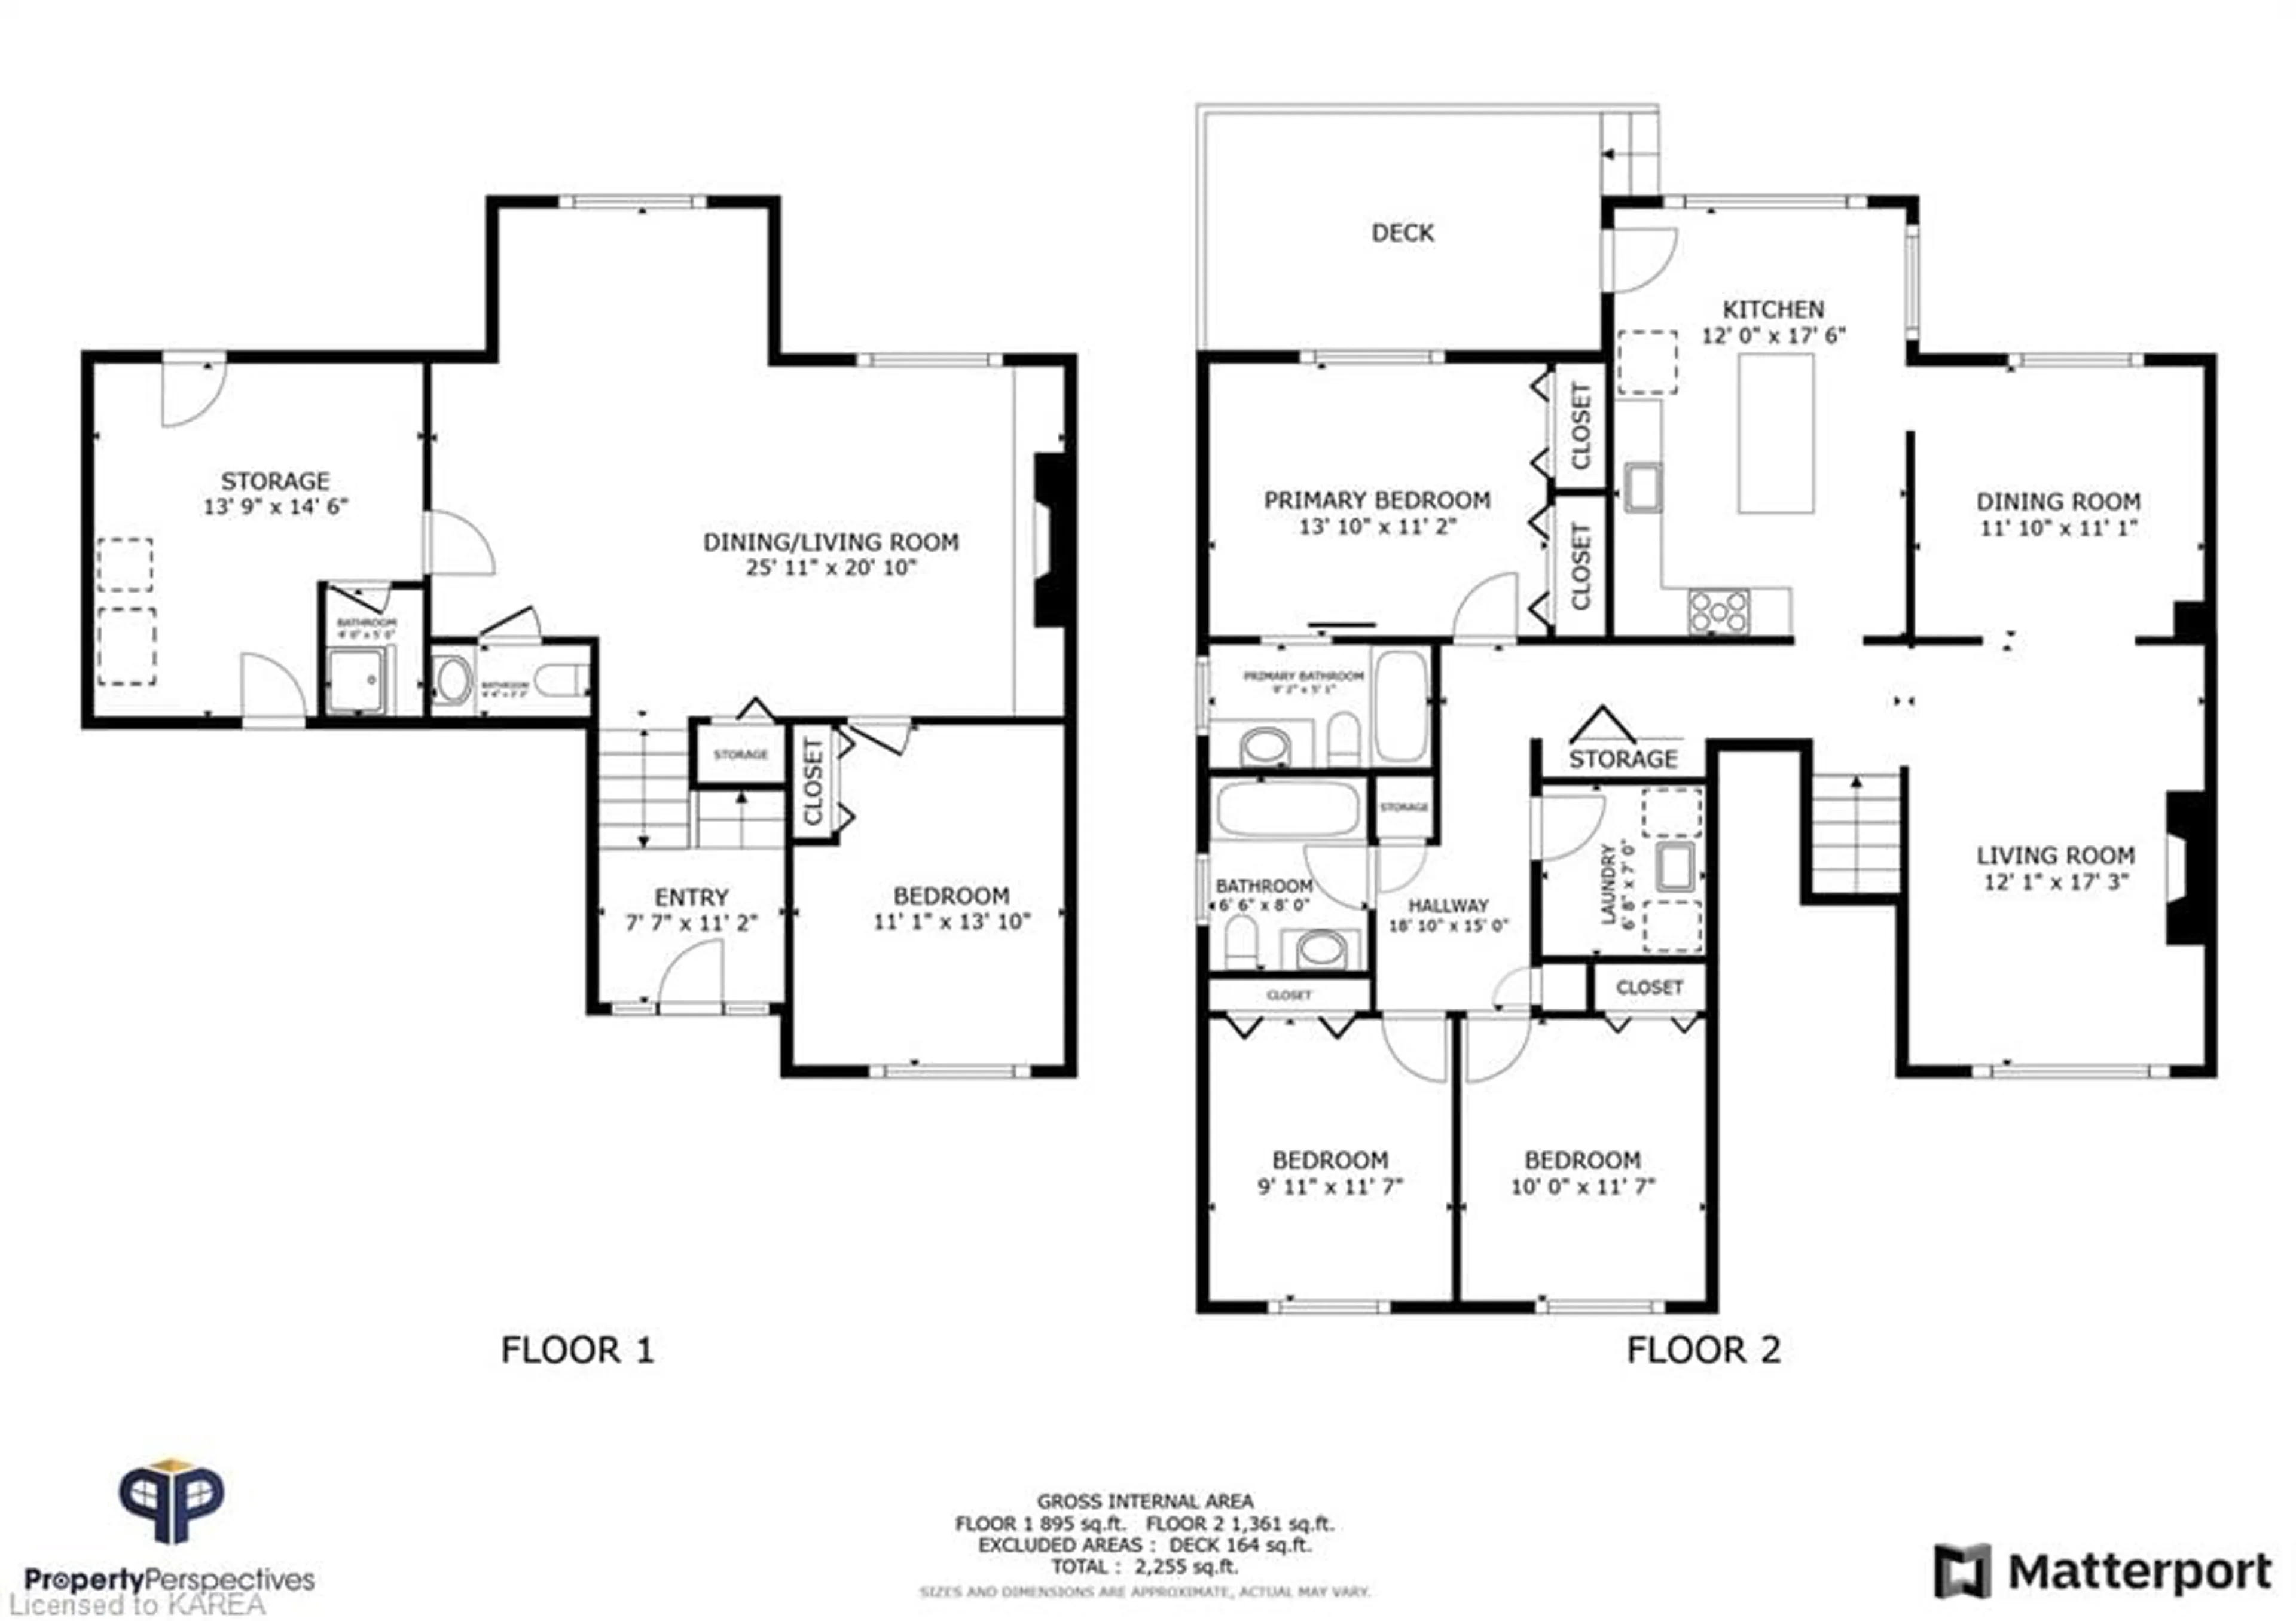 Floor plan for 1146 Lancaster Dr, Kingston Ontario K7P 2S3